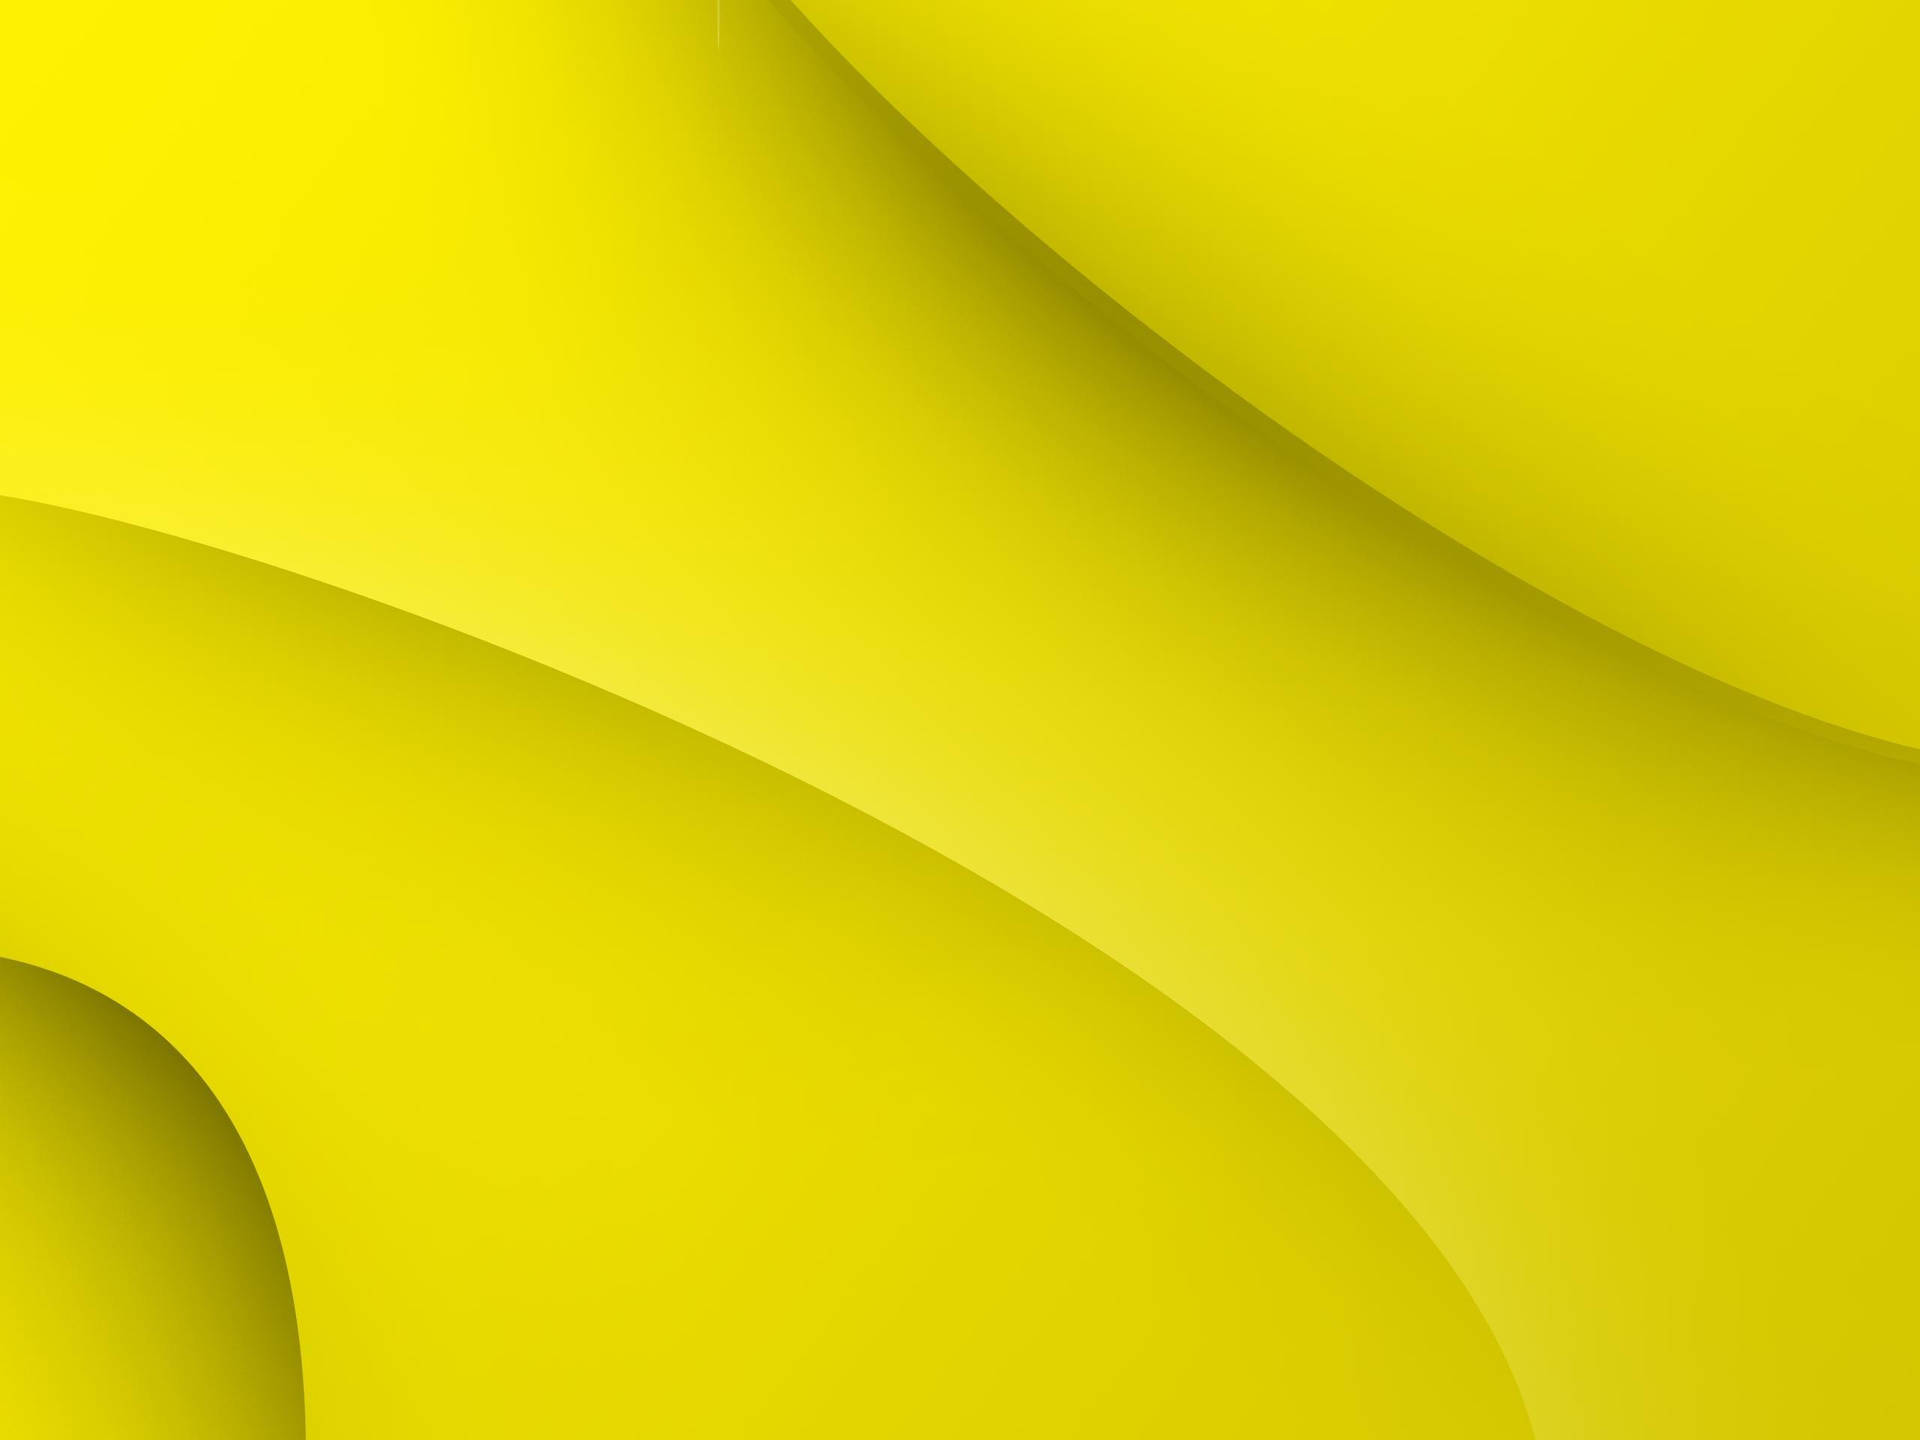 Plain Yellow Abstract Art Desktop Wallpaper